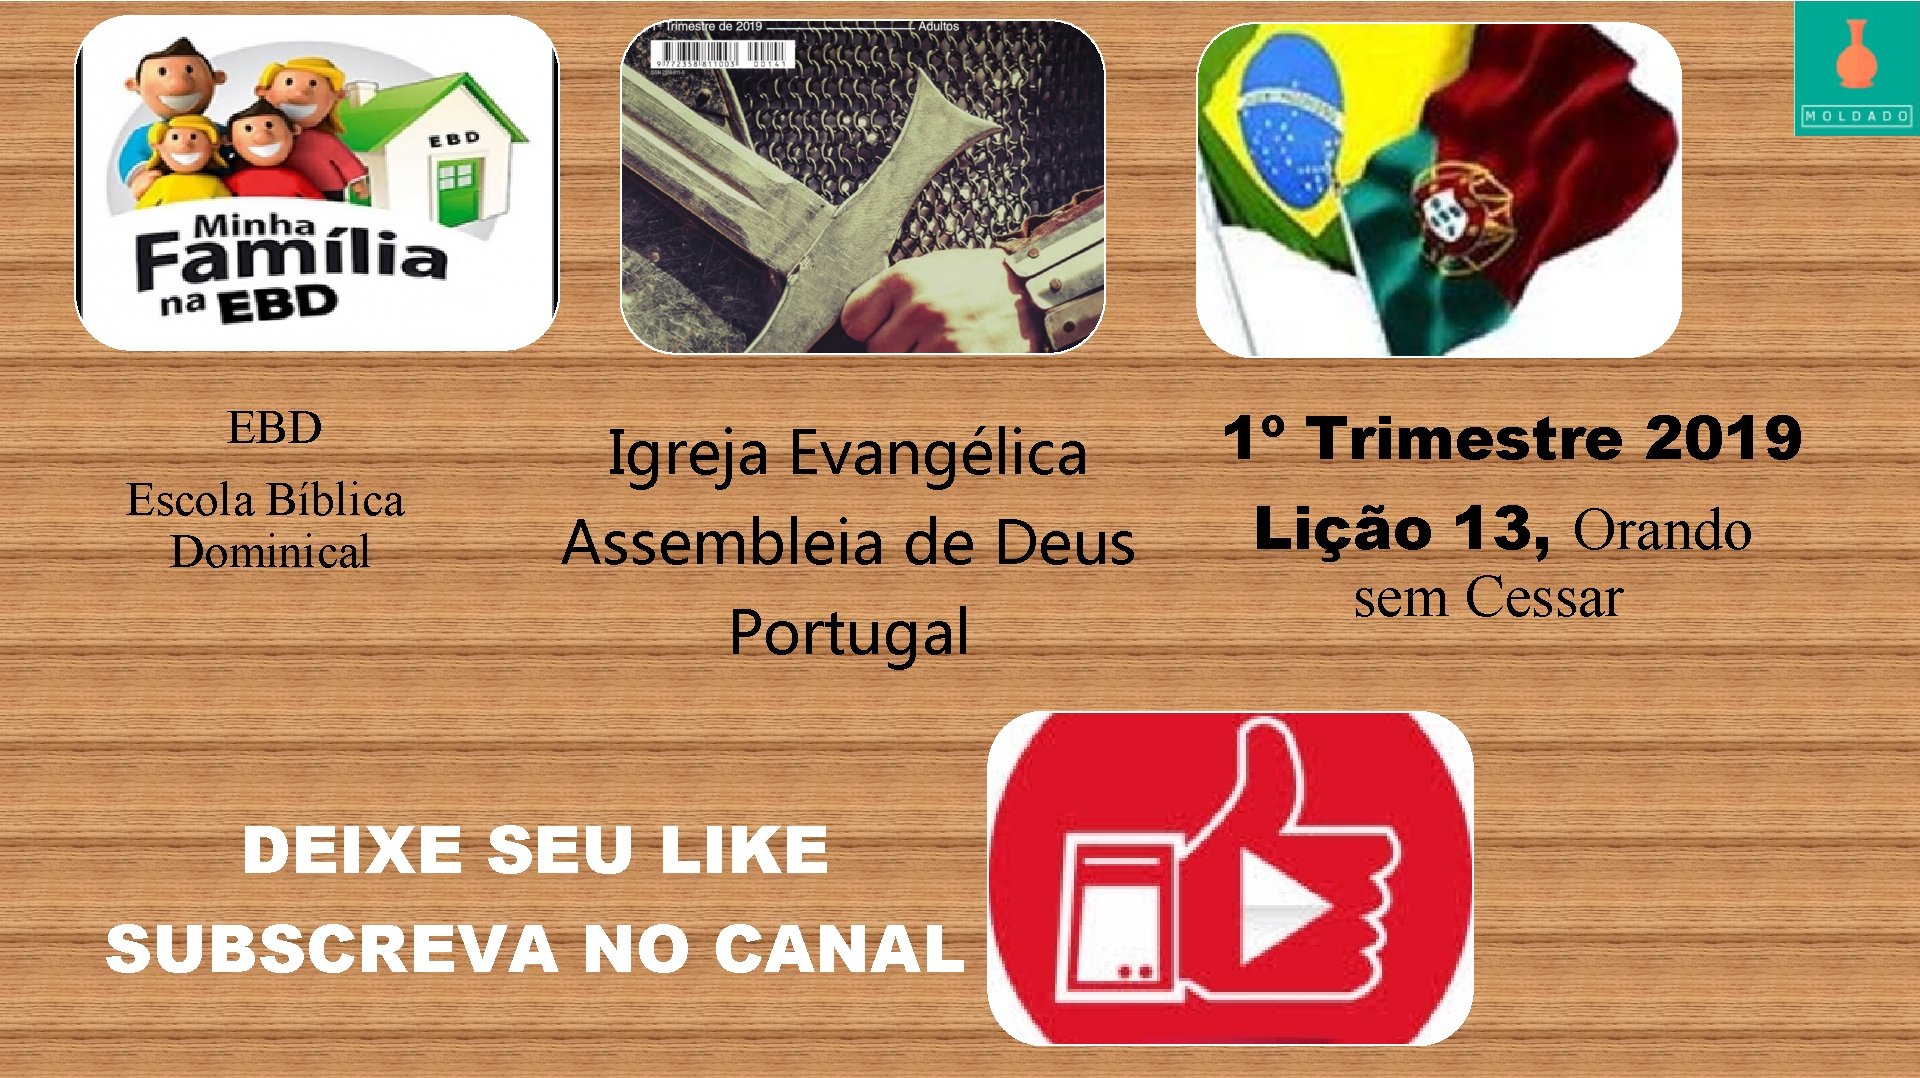 EBD Escola Bíblica Dominical Igreja Evangélica Assembleia de Deus Portugal DEIXE SEU LIKE SUBSCREVA